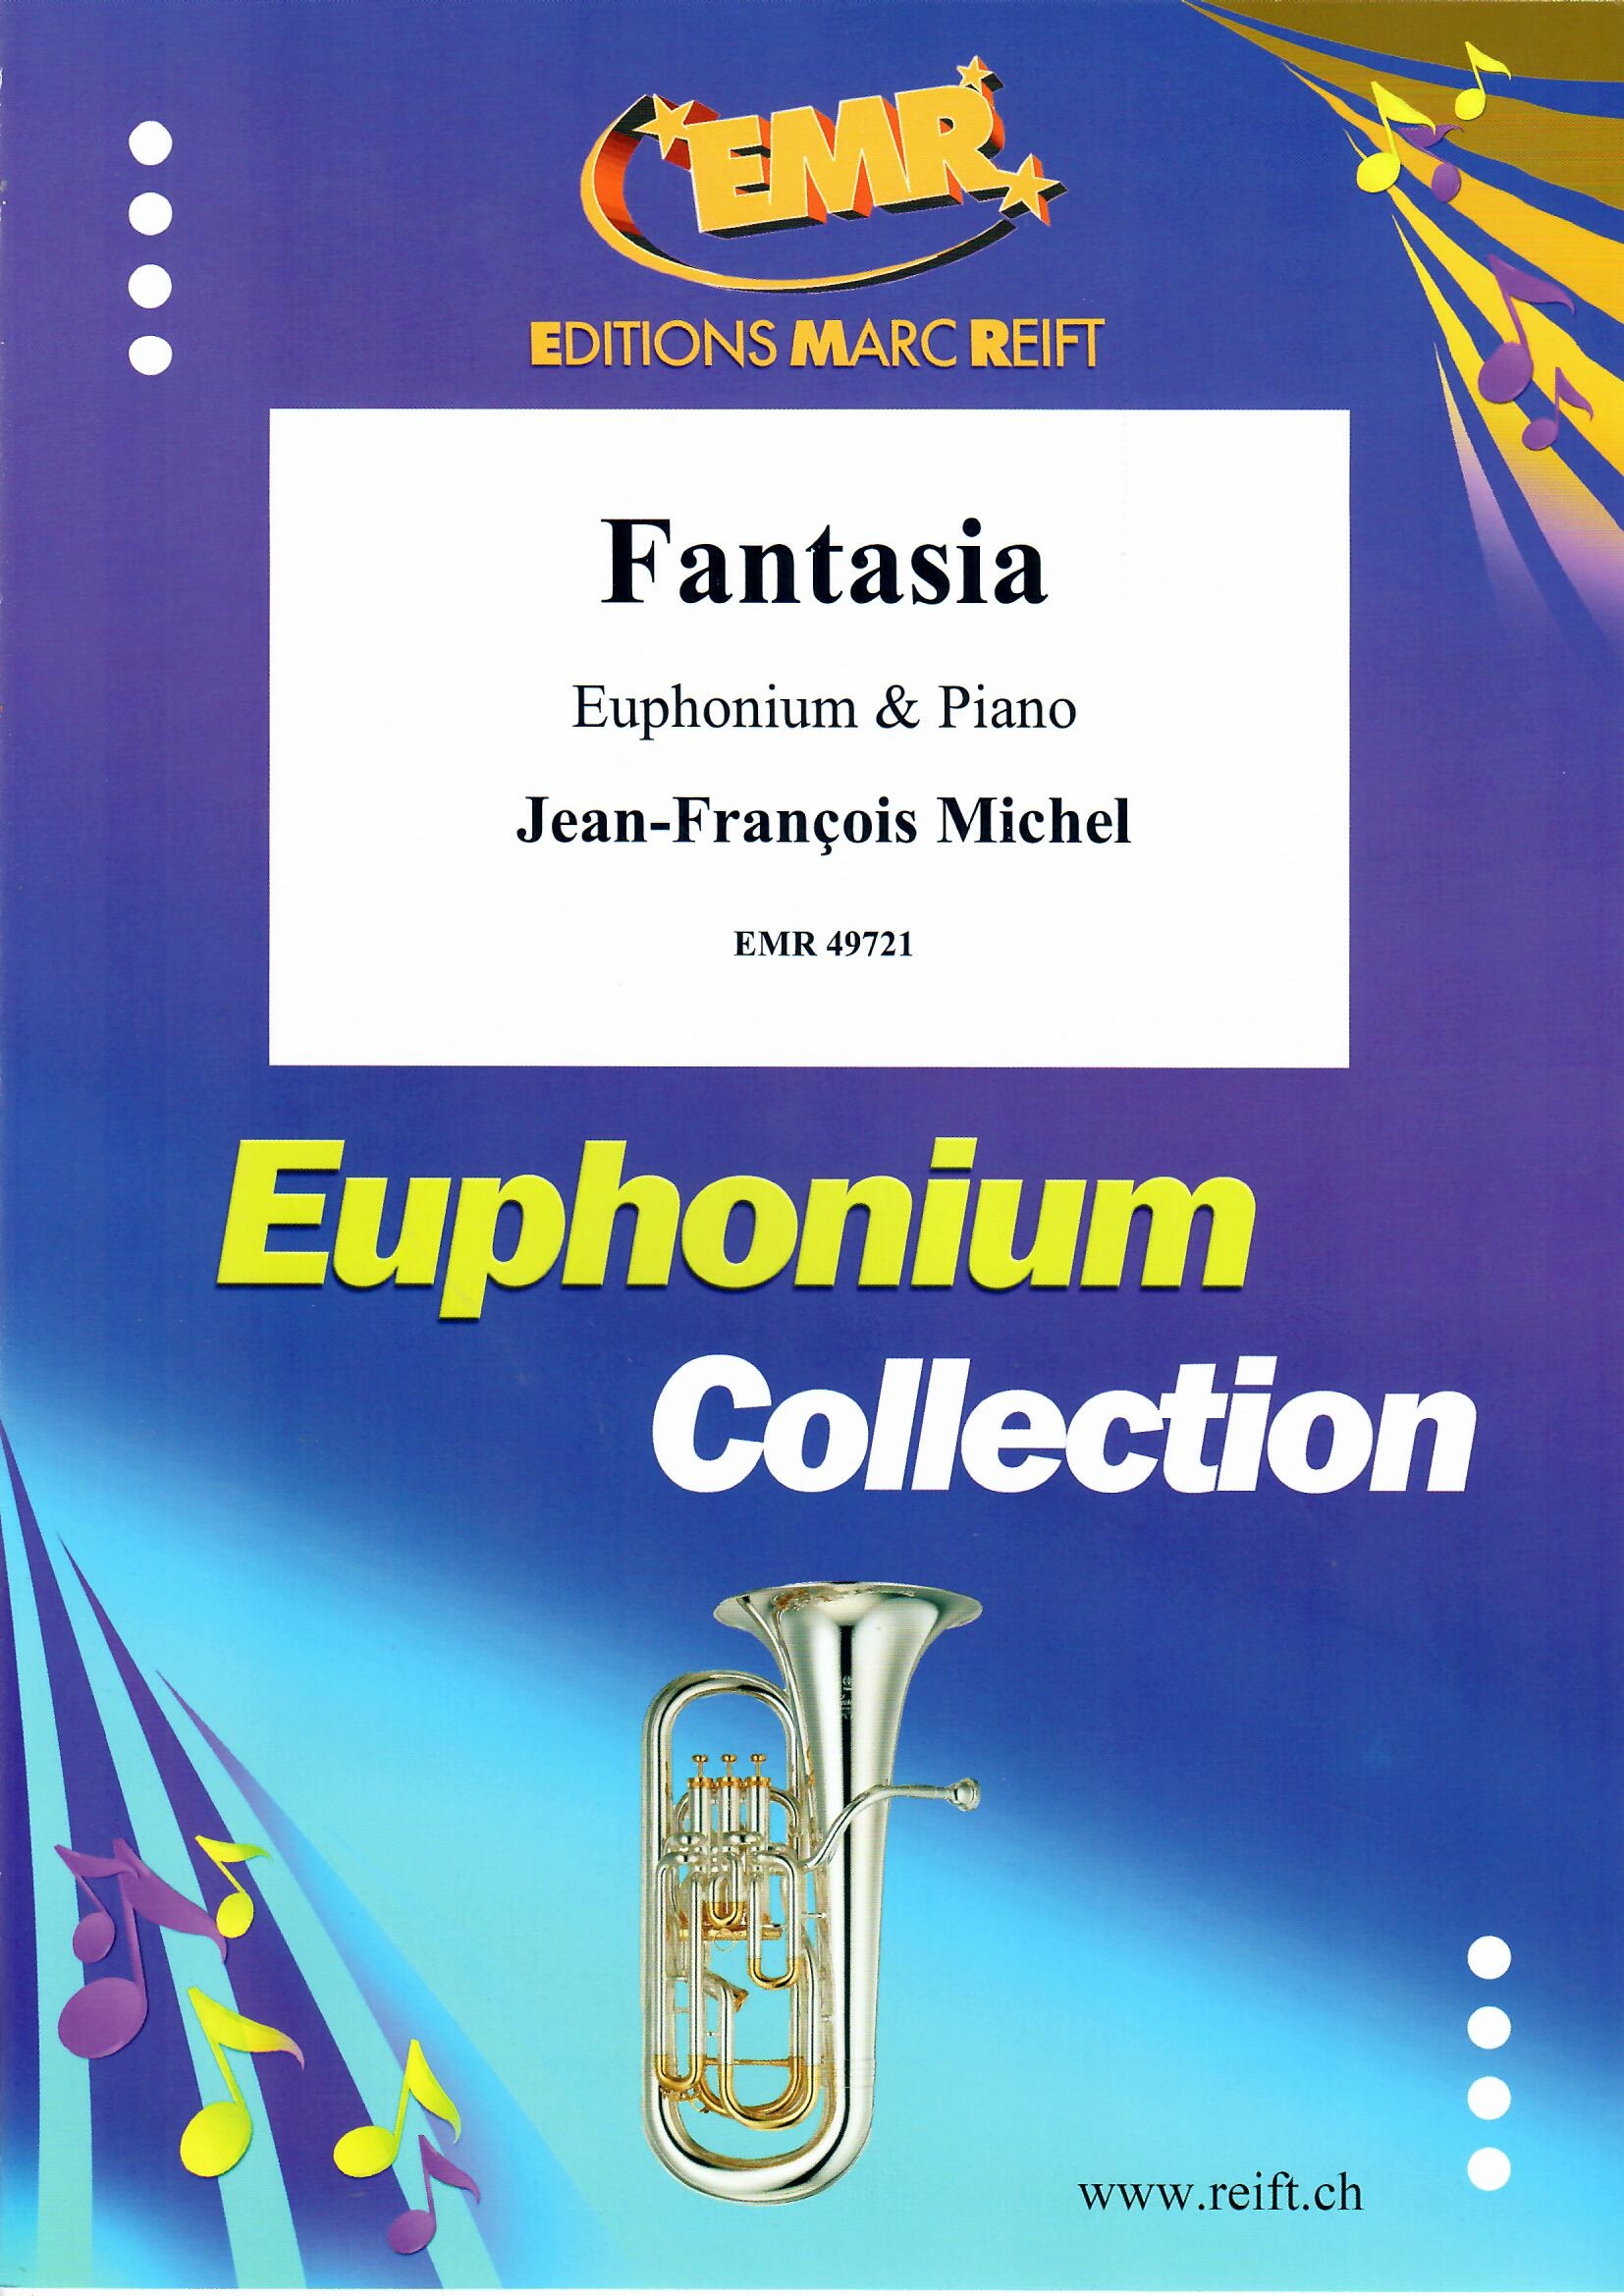 FANTASIA - Euphonium & Piano